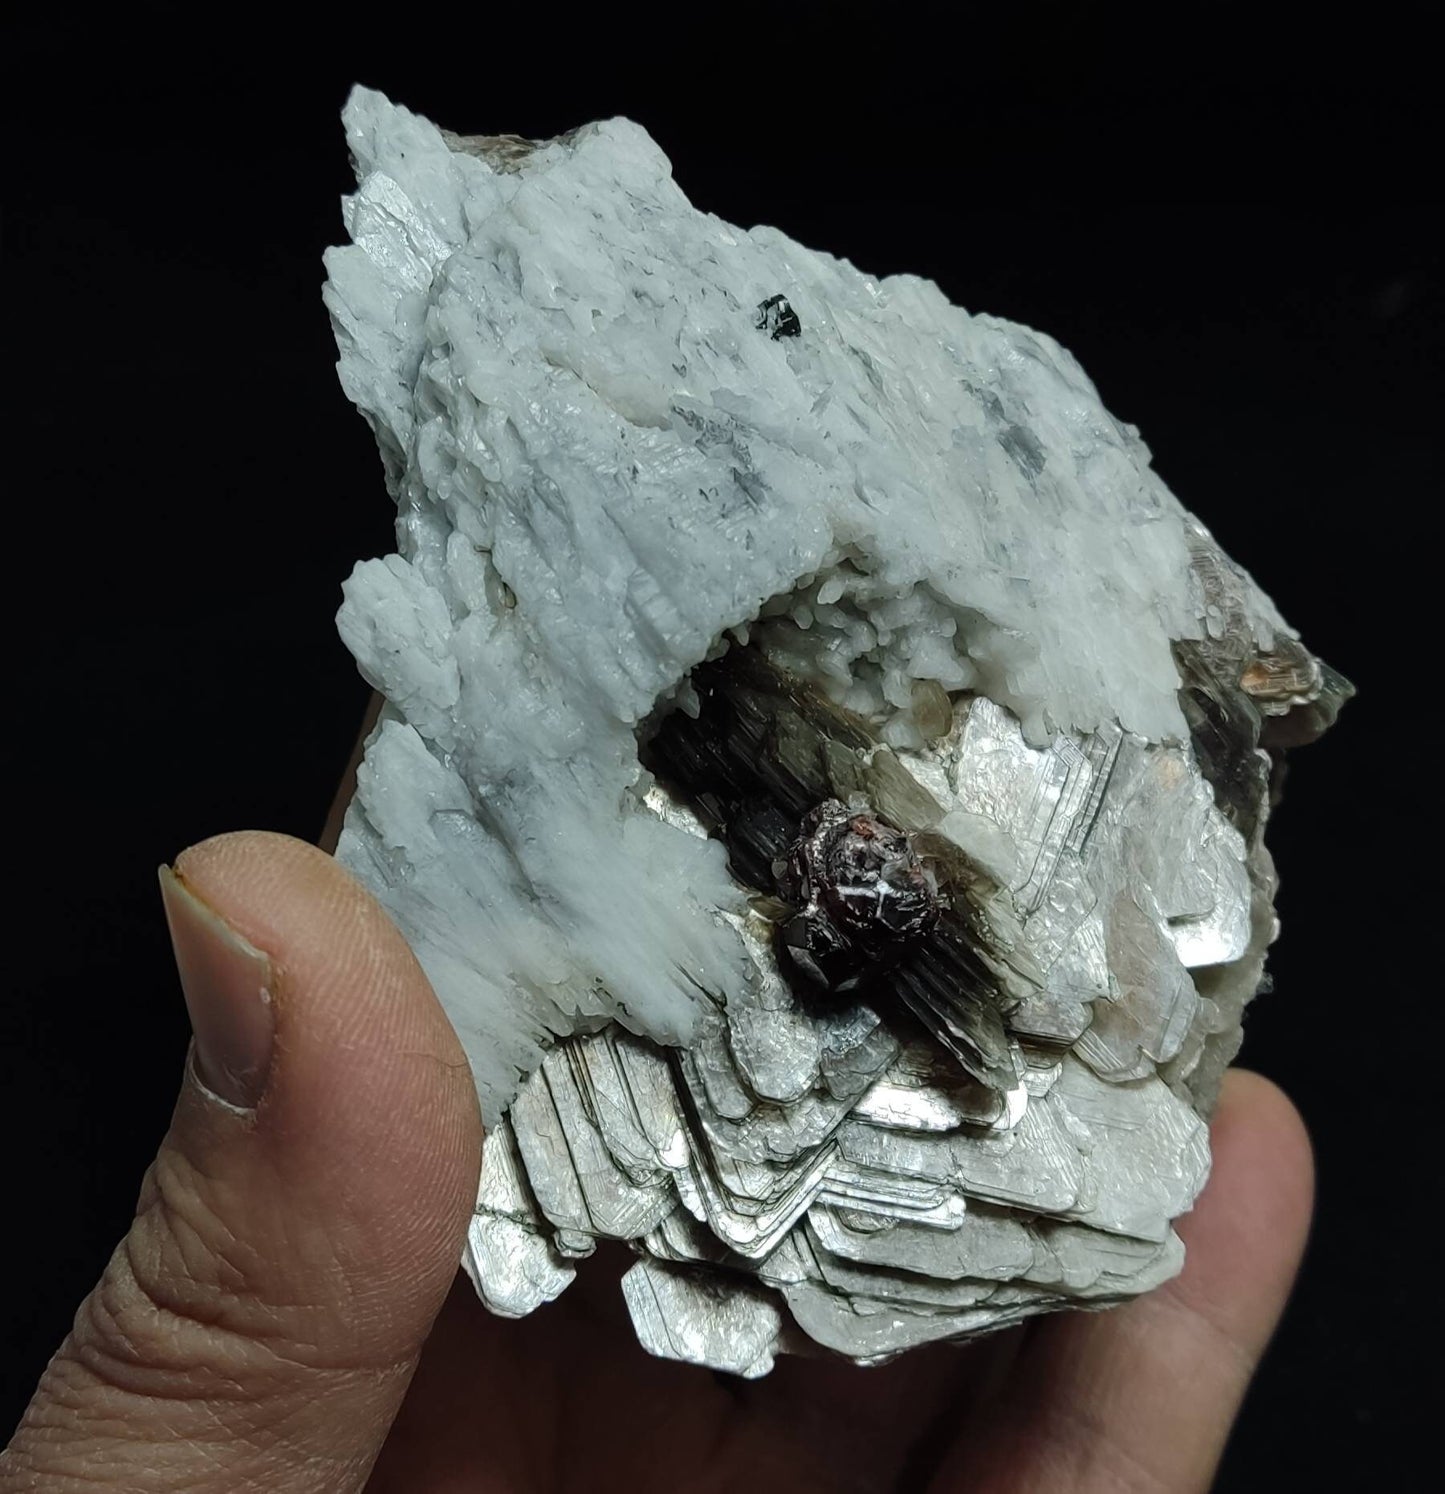 An amazing aesthetic specimen of spessartine garnet embedded in muscovite and albite 433 grams